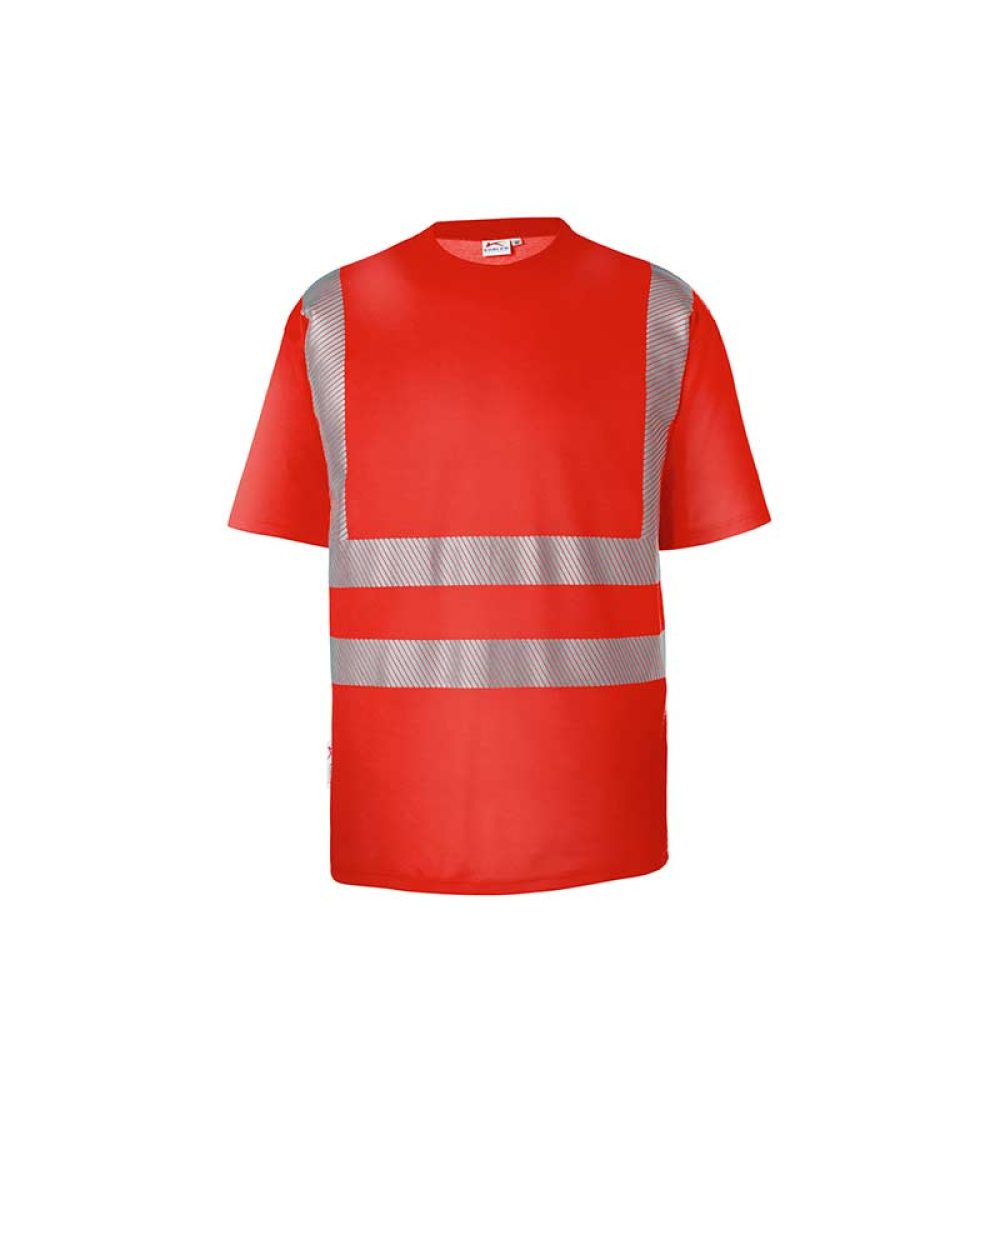 kuebler-warnschutz-t-shirt-shirts-5043-8227-54